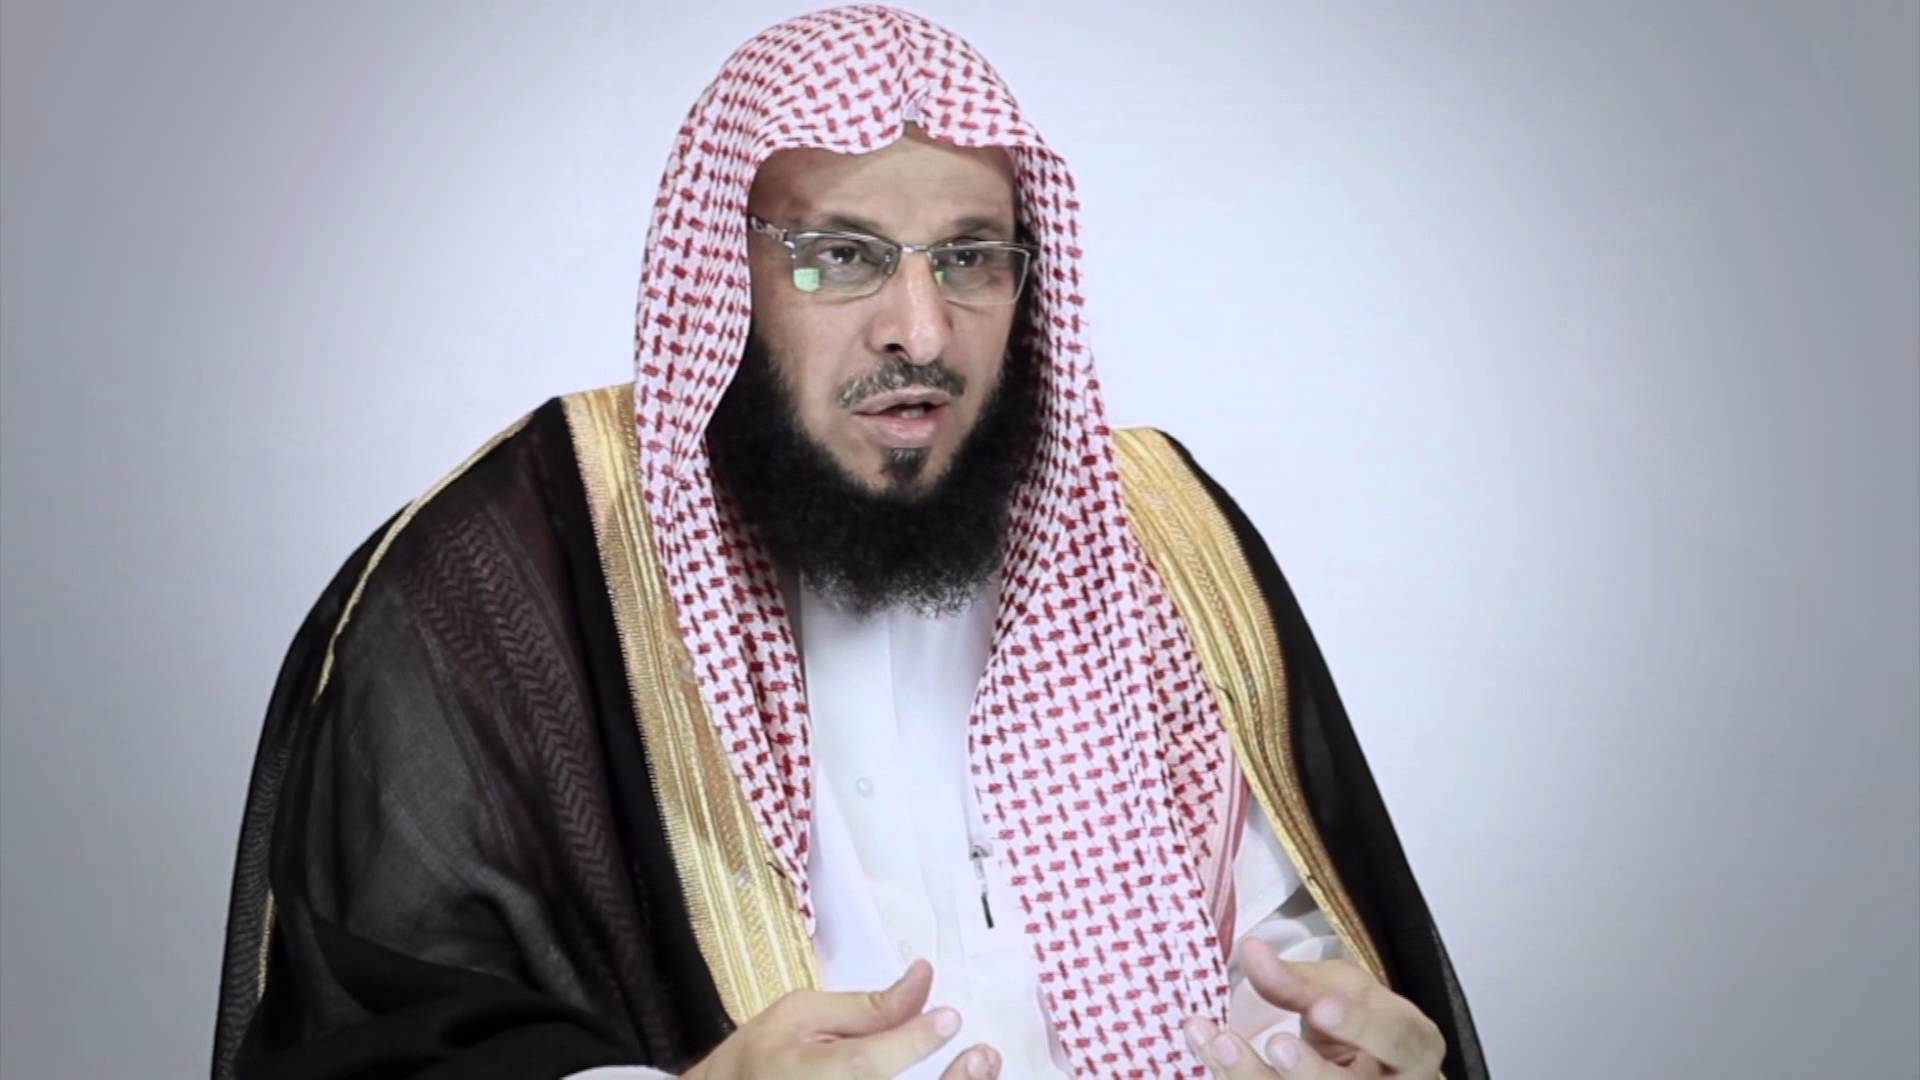 Аид аль-Карни - один из наиболее популярных мусульманских проповедников